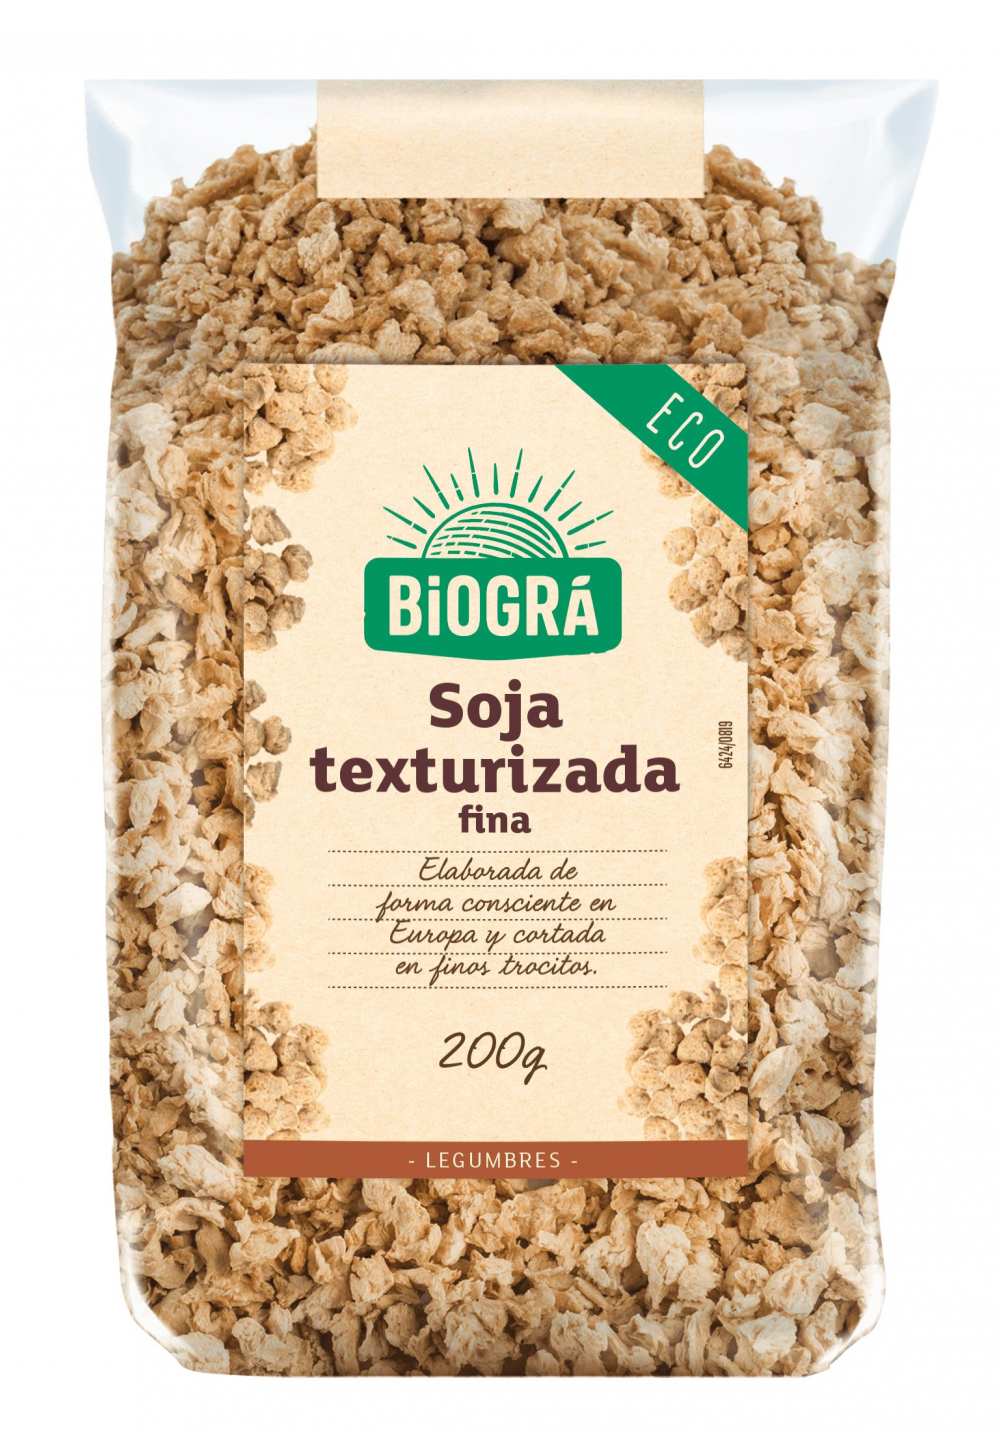 Soja texturizada fina Biográ 200g. en Biosano